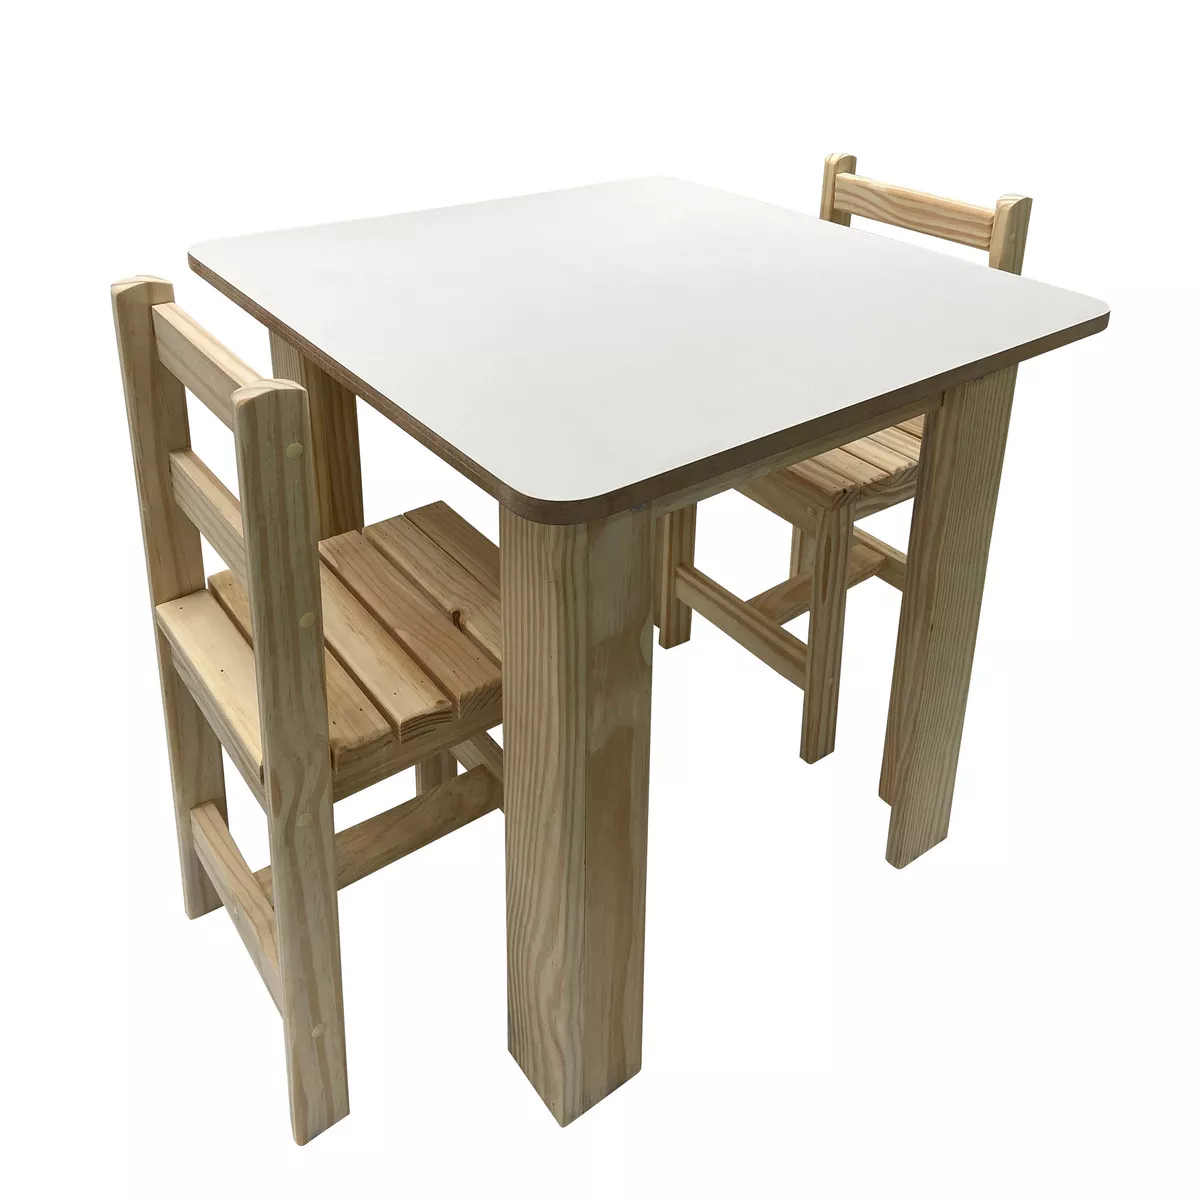 Segunda imagem para pesquisa de mesa infantil de madeira